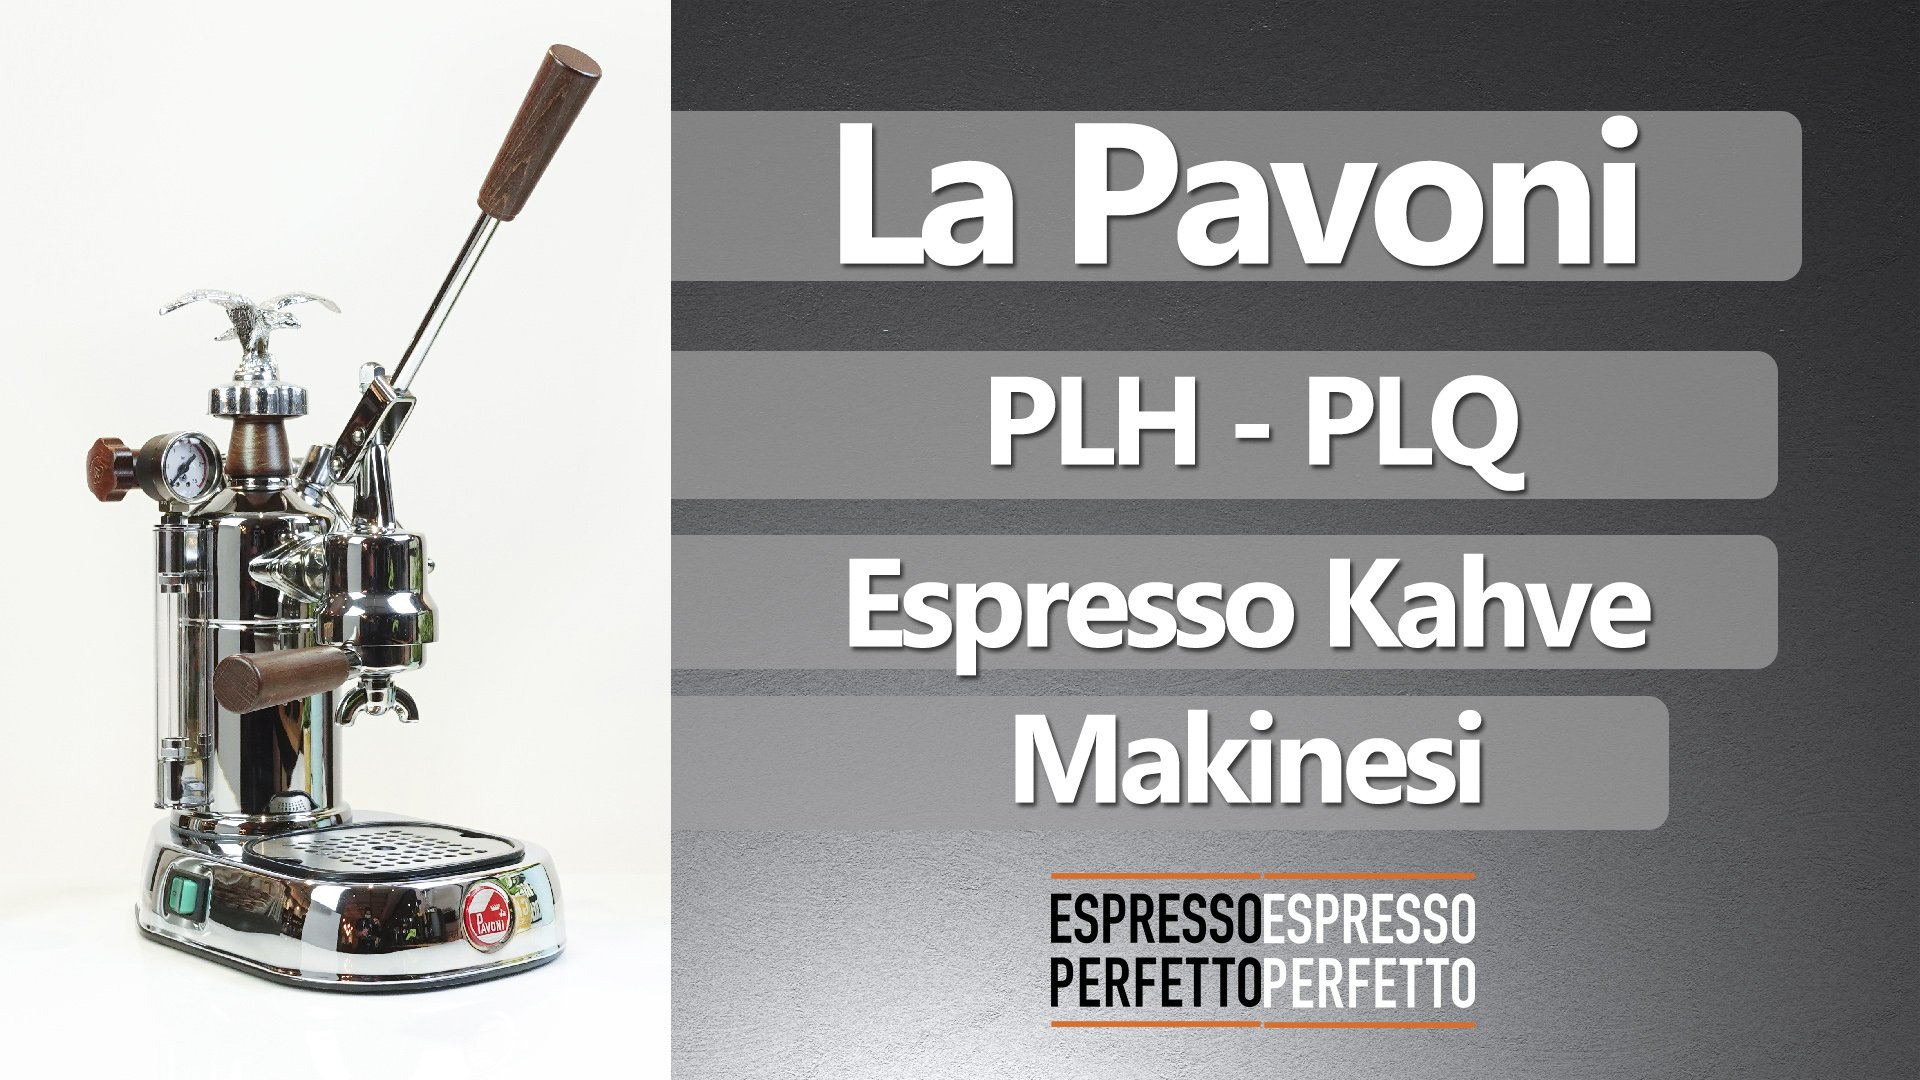 La Pavoni Professional Lever Espresso Makinesi